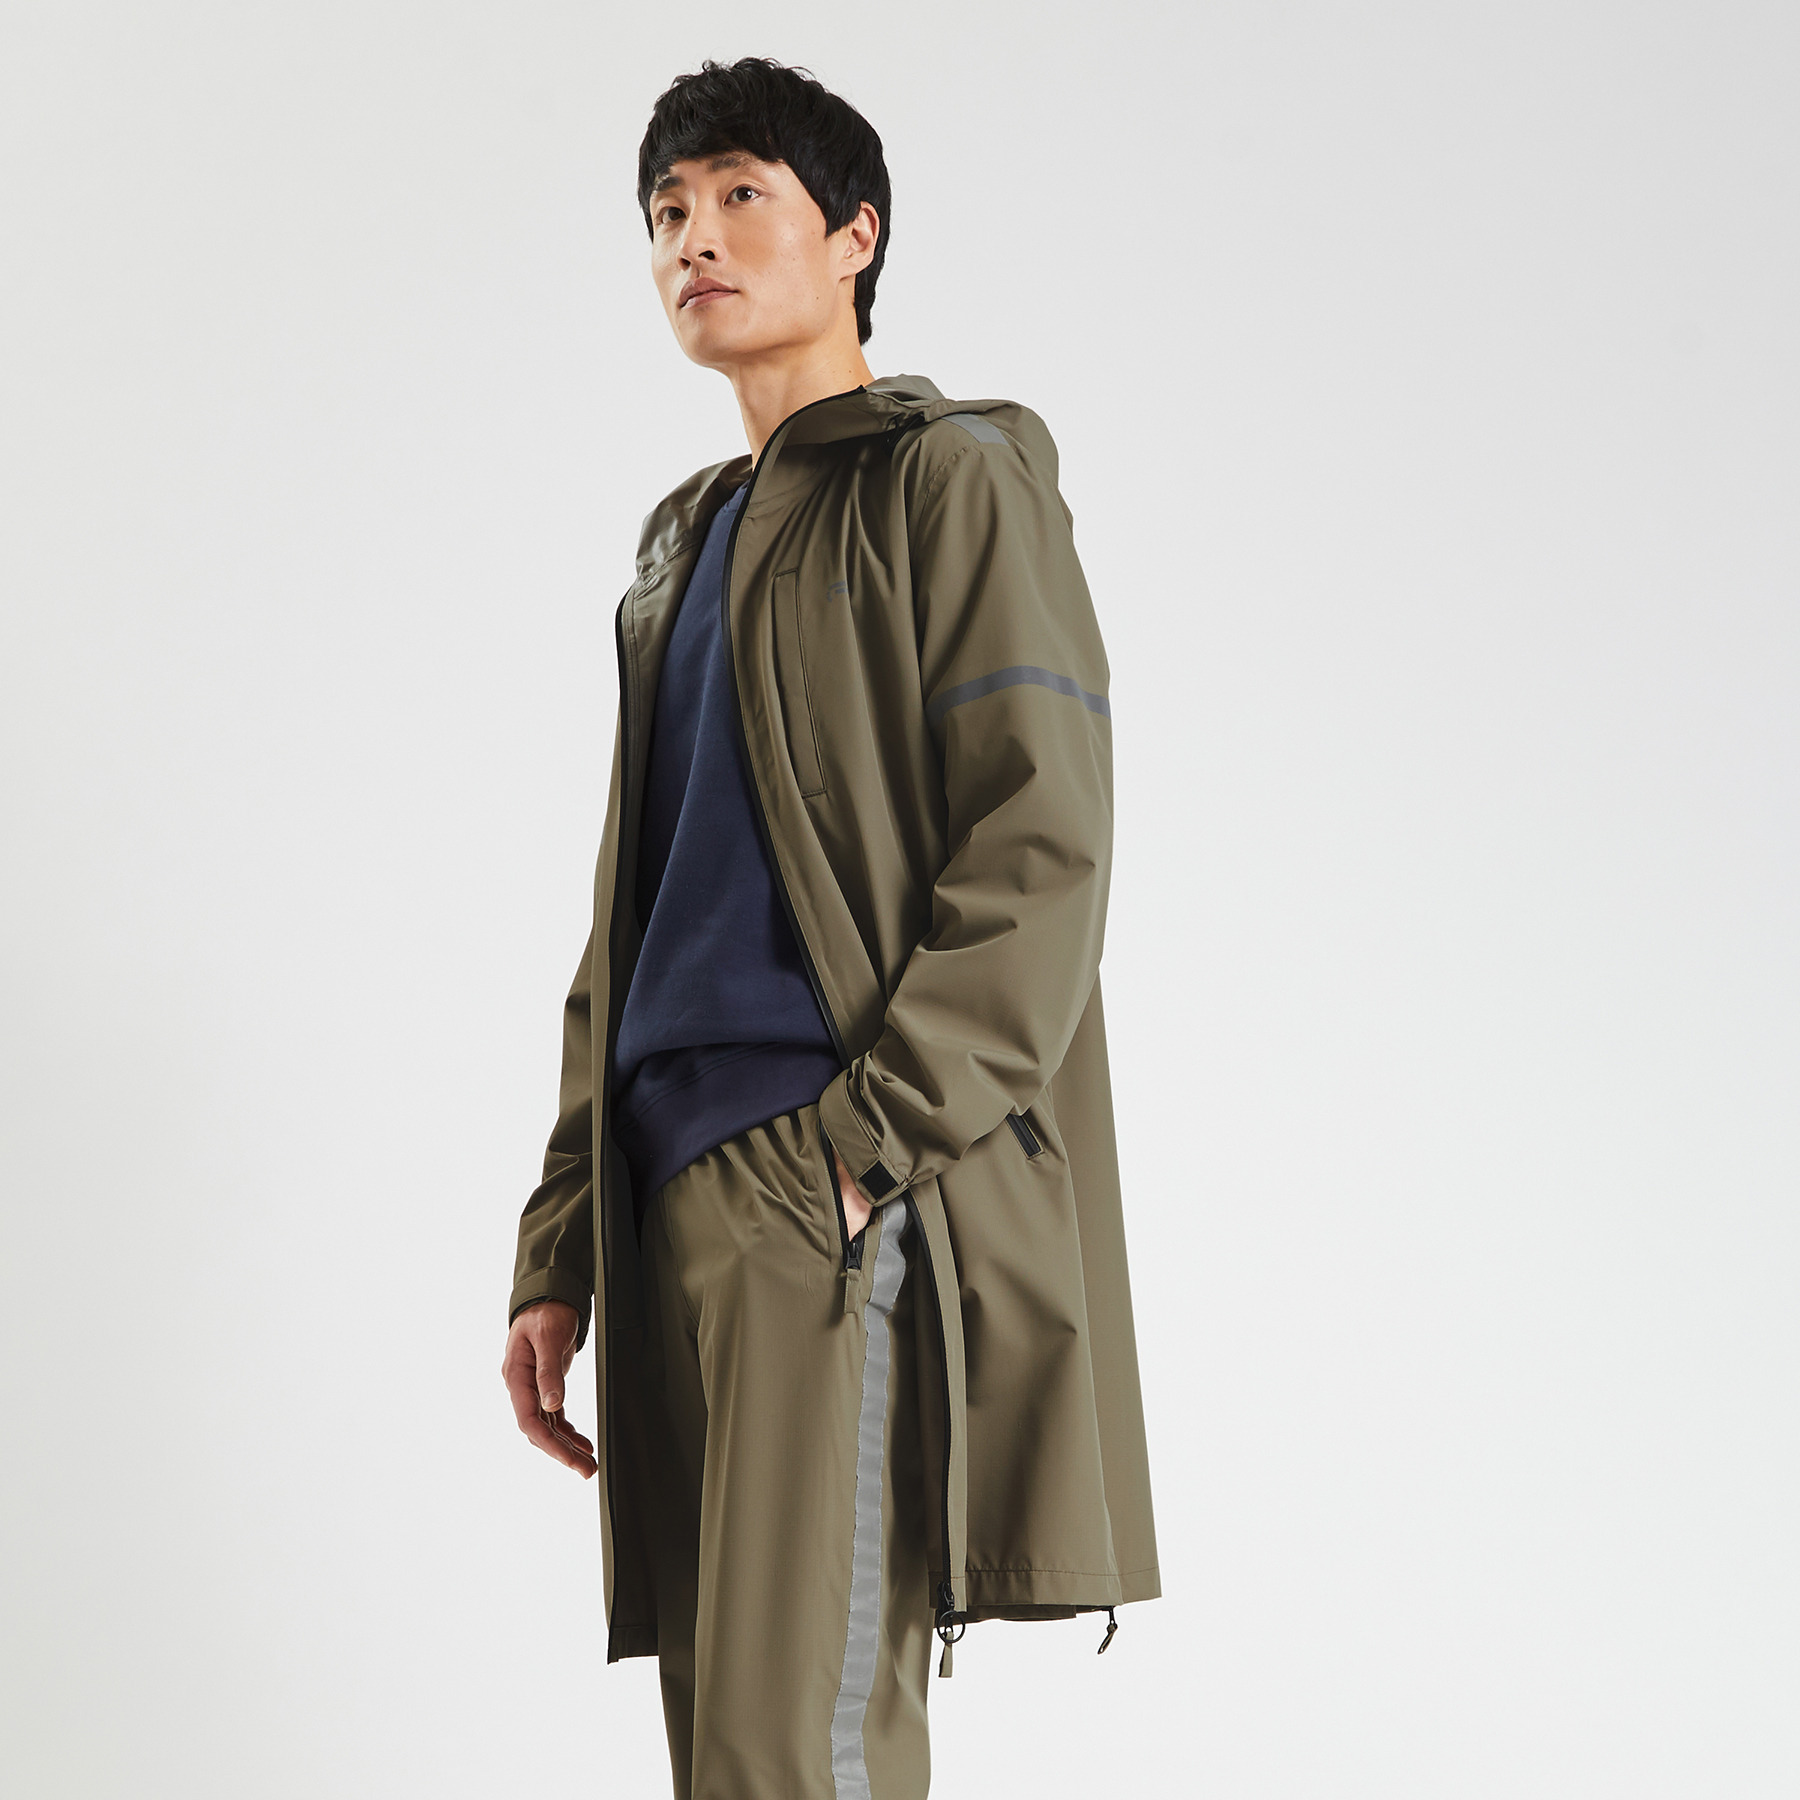 Manteau de pluie matière imperméable Vert kaki S 100% Polyester Homme Jules